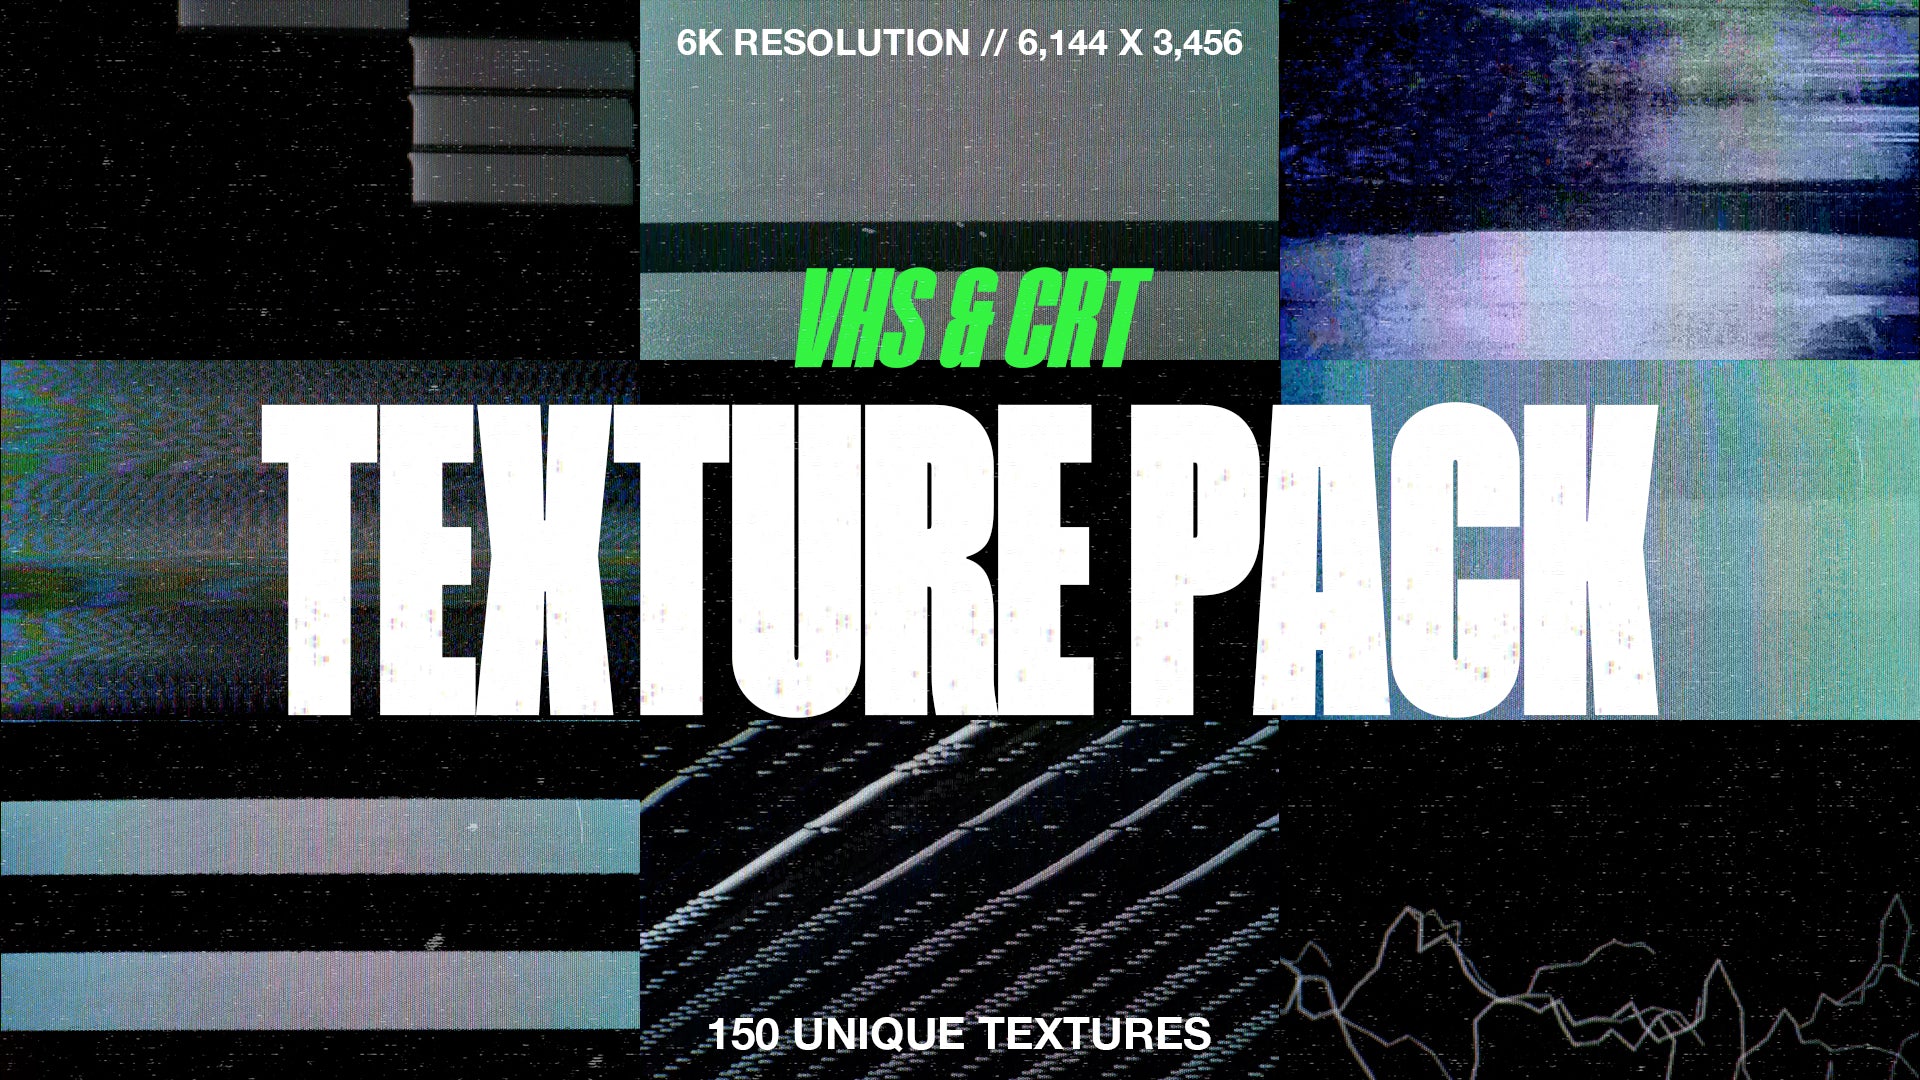 6K VHS & CRT Texture Pack